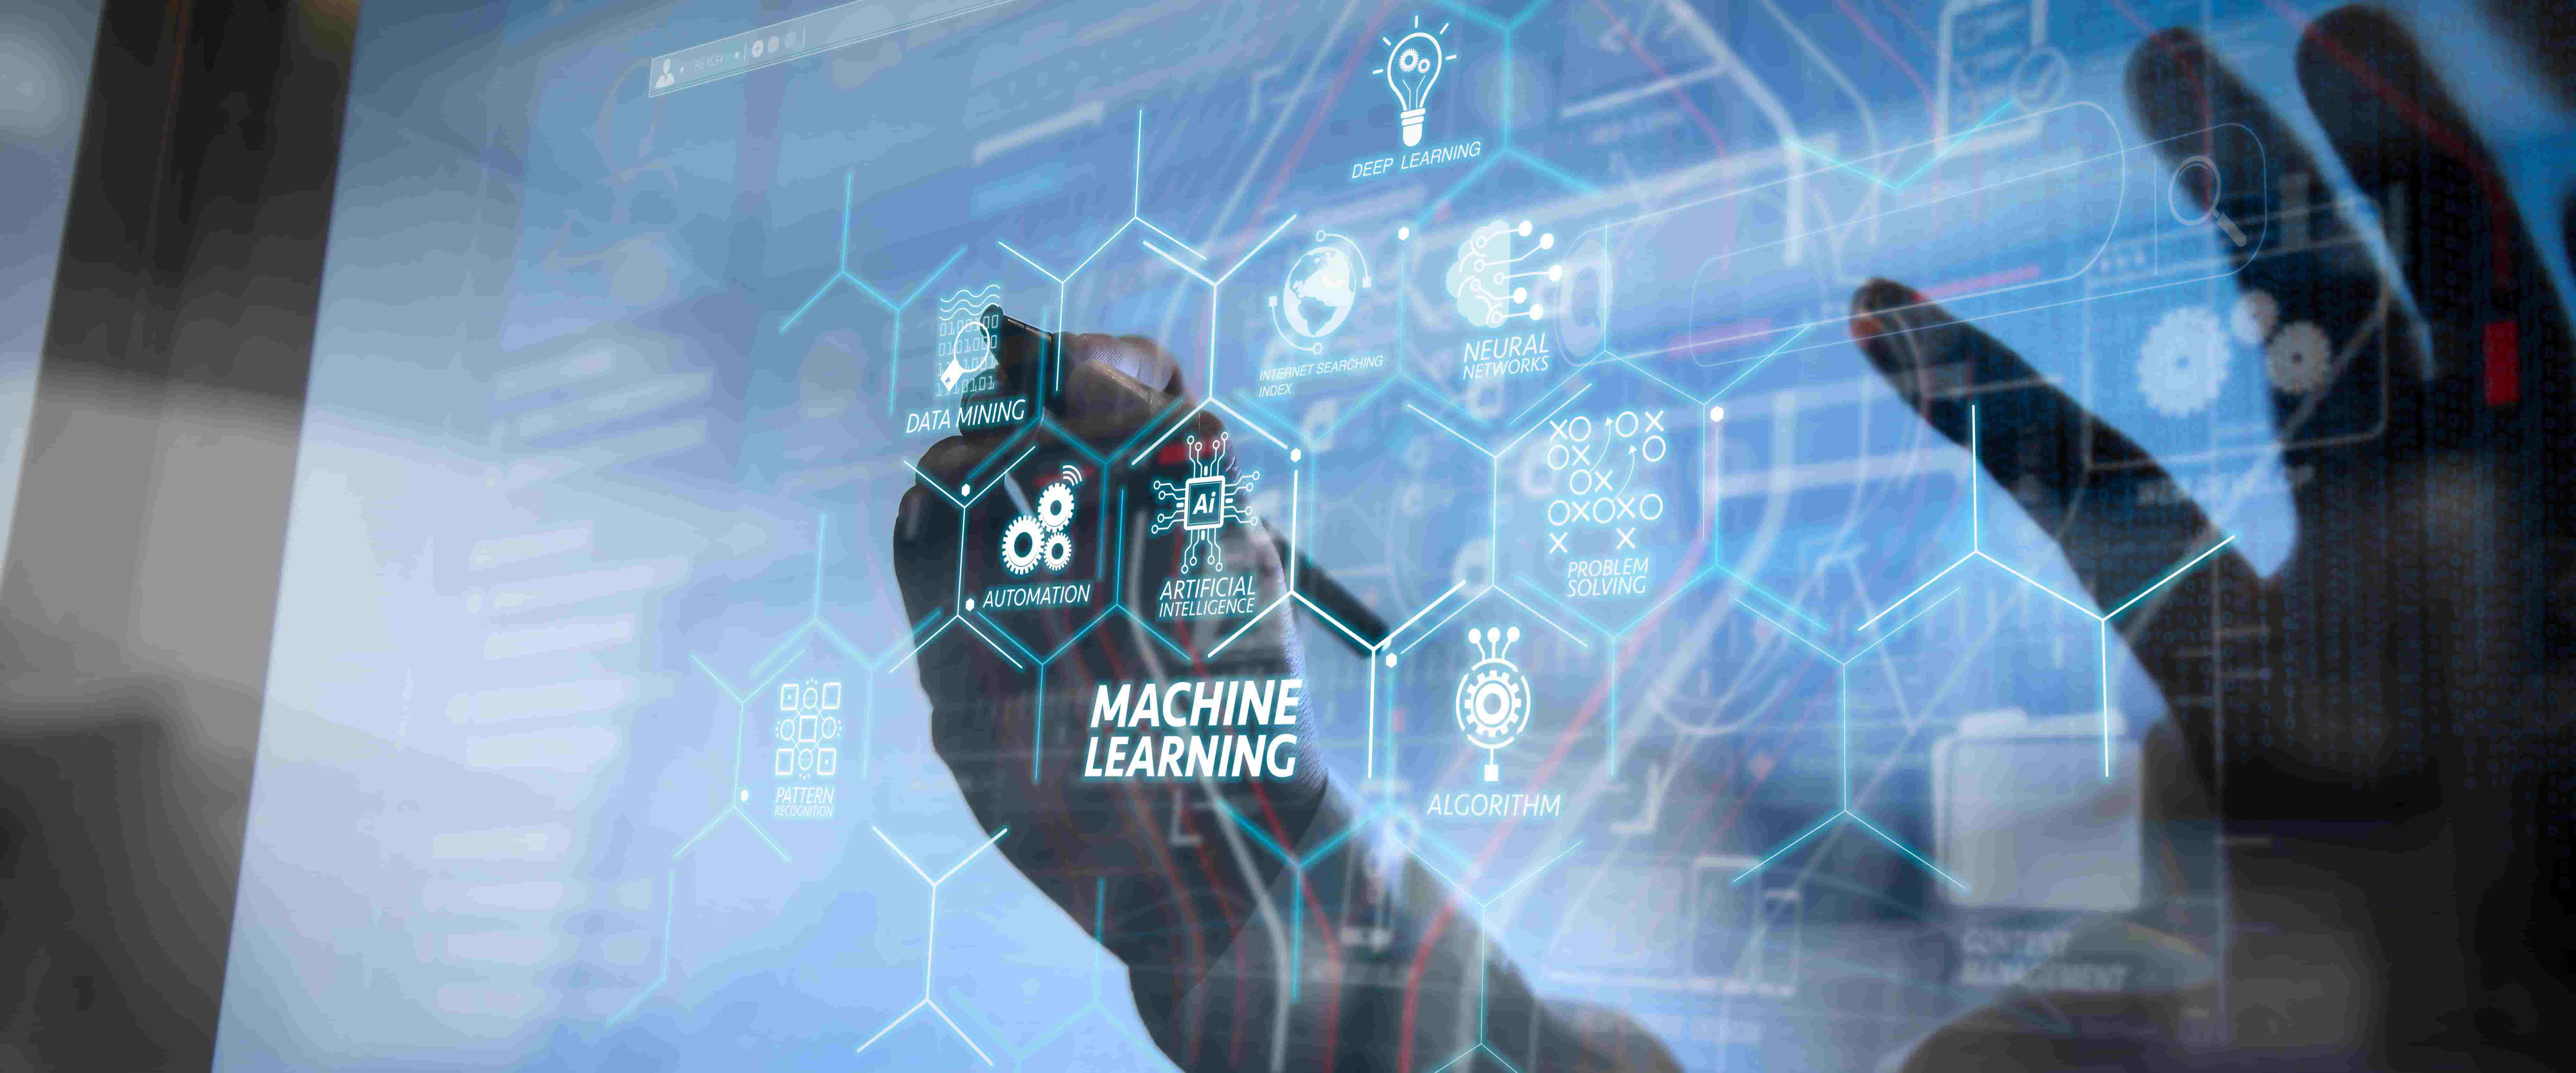 图片展示了一只手在触摸具有高科技感的透明屏幕，屏幕上显示着“机器学习”和多个与人工智能相关的图标和术语。